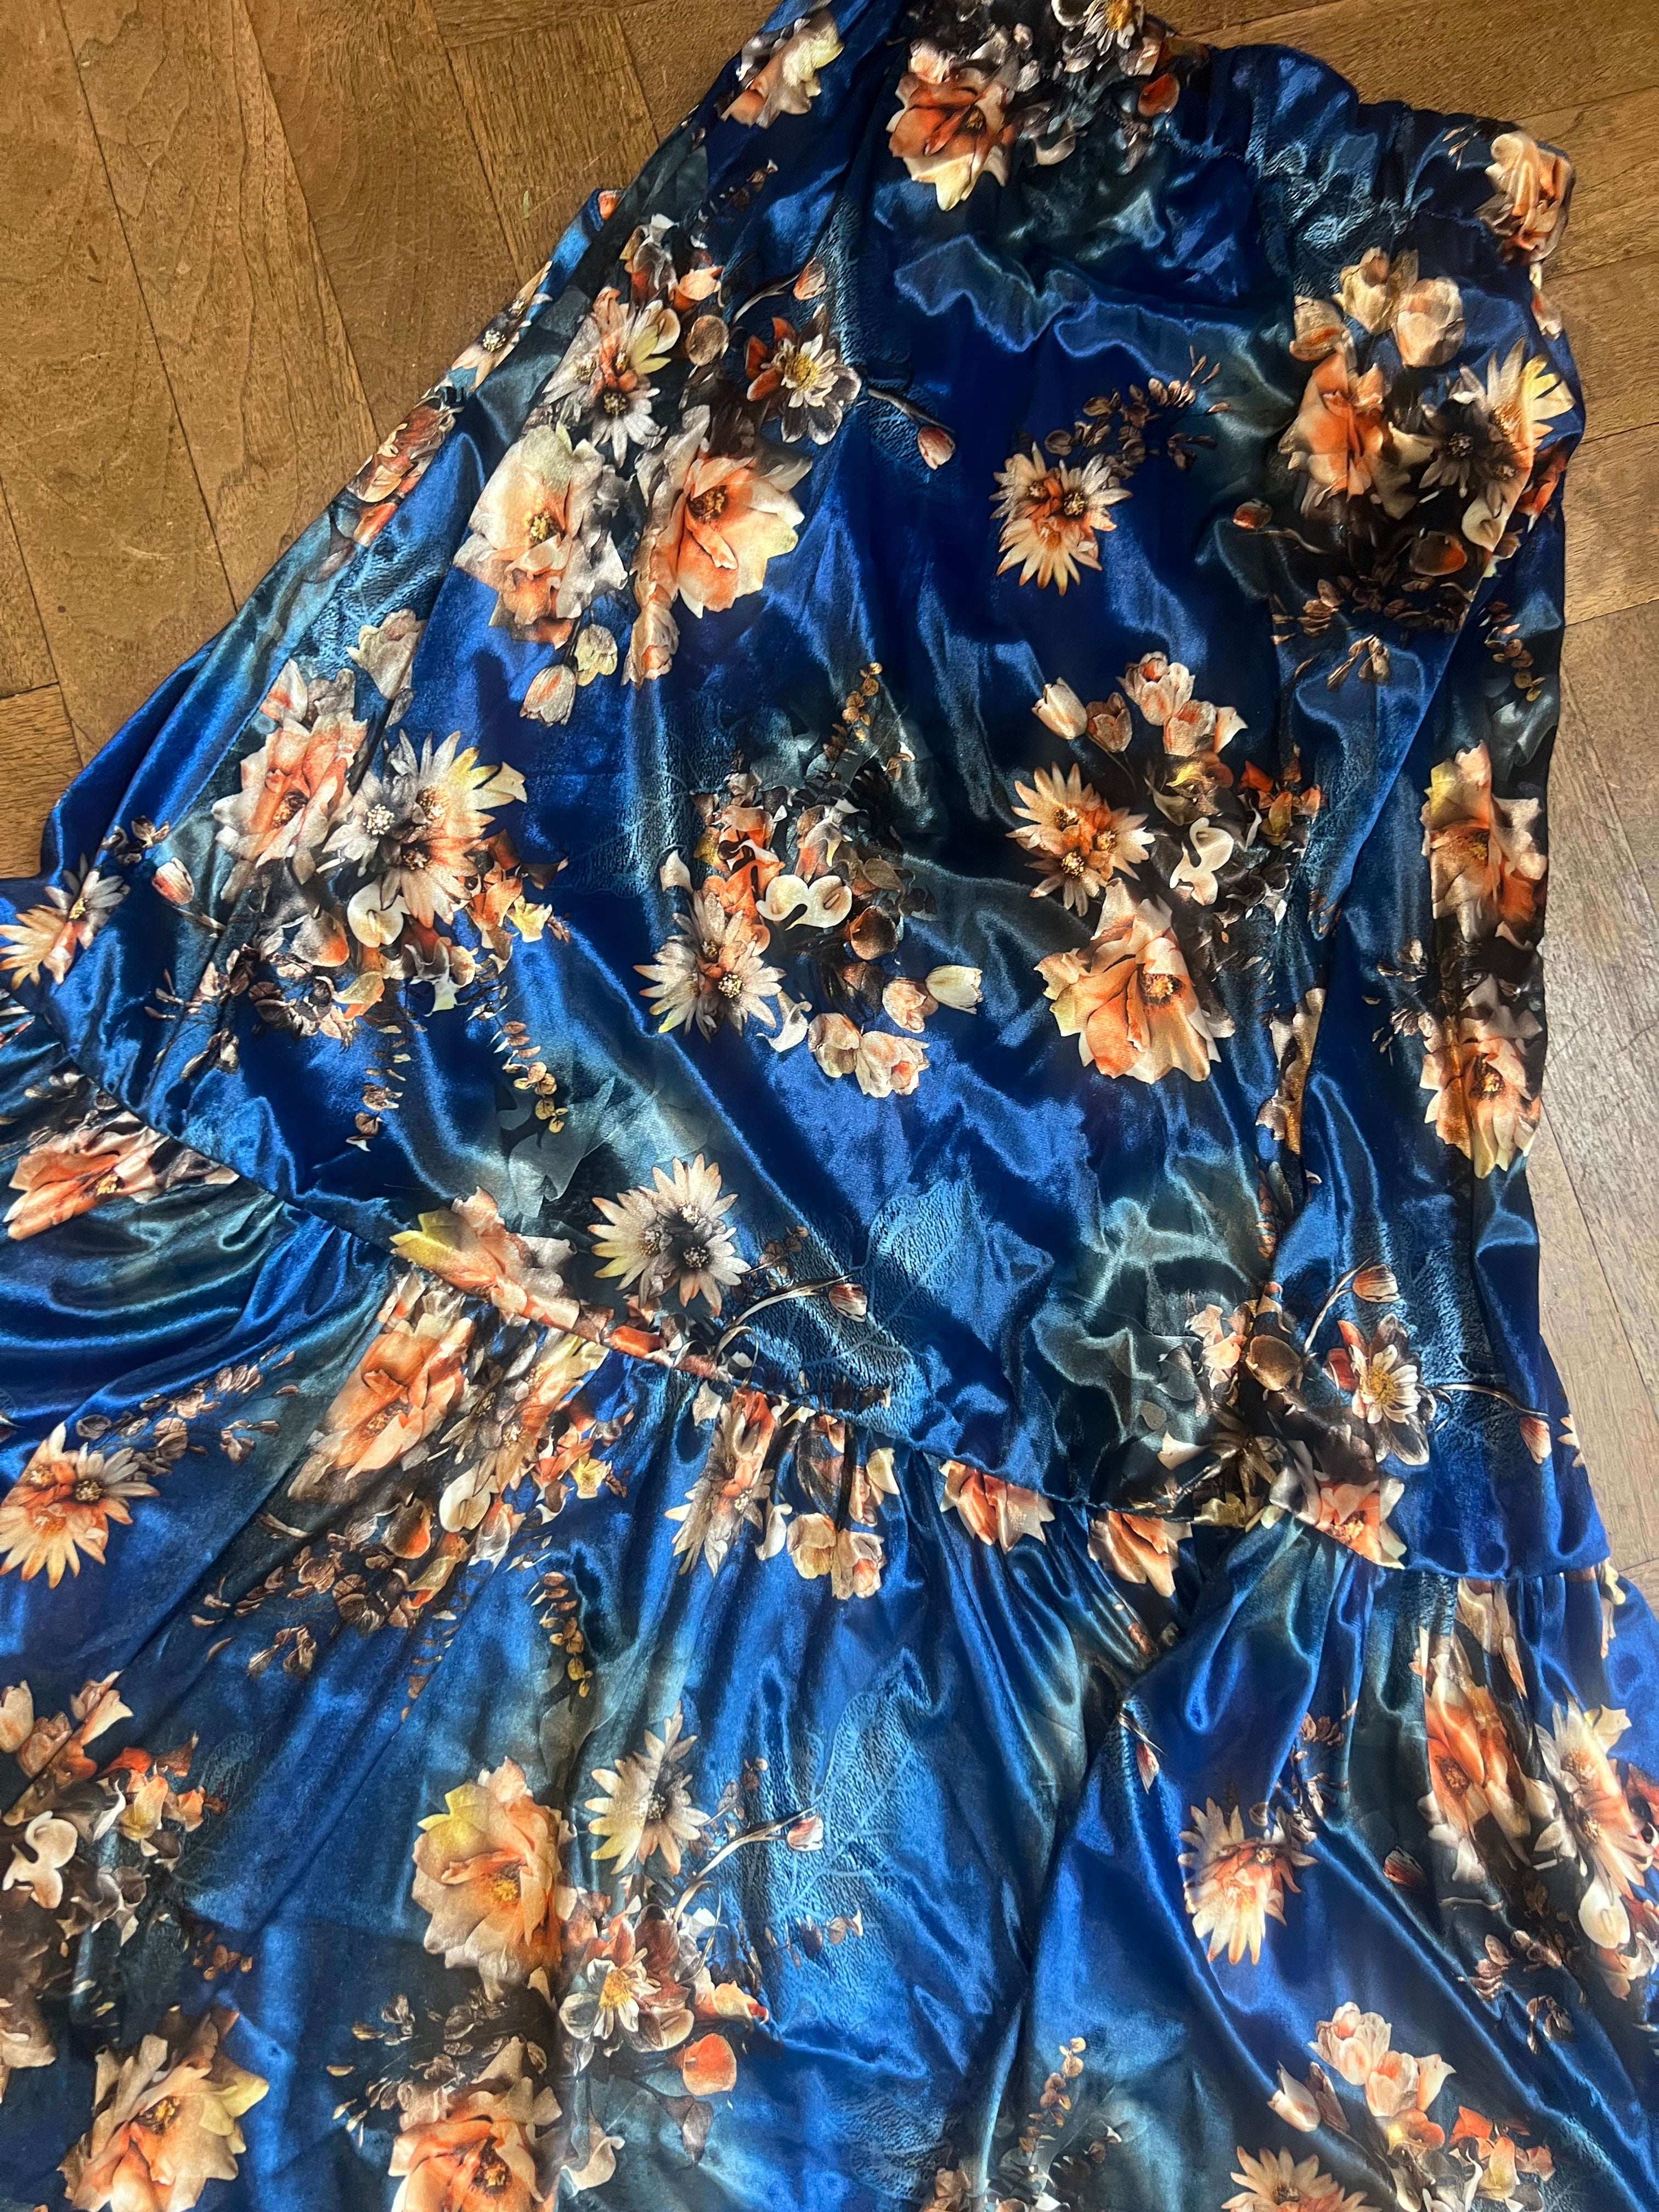 Velvet floral skirt sample size 10